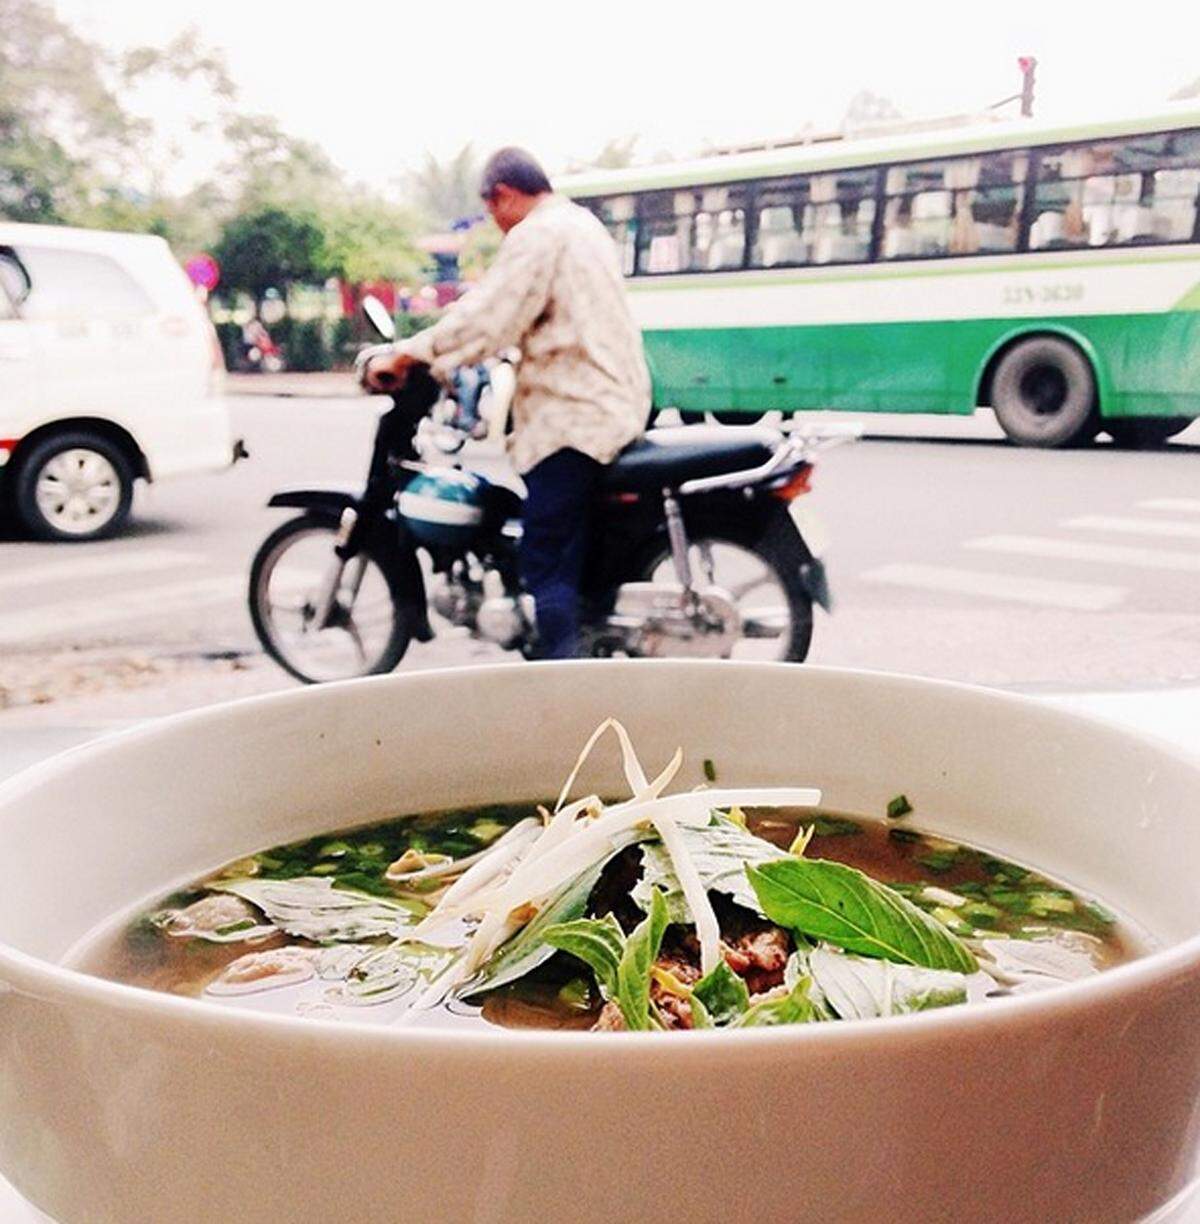 Der Instagram-Account kommt gut an. Unter dem Hastag #WeEatWorld posten Frauen rund um den Globus landestypische Spezialitäten. Zum Frühstück steht für die passionierte Reisende Pho in Vietnam auf dem Programm.